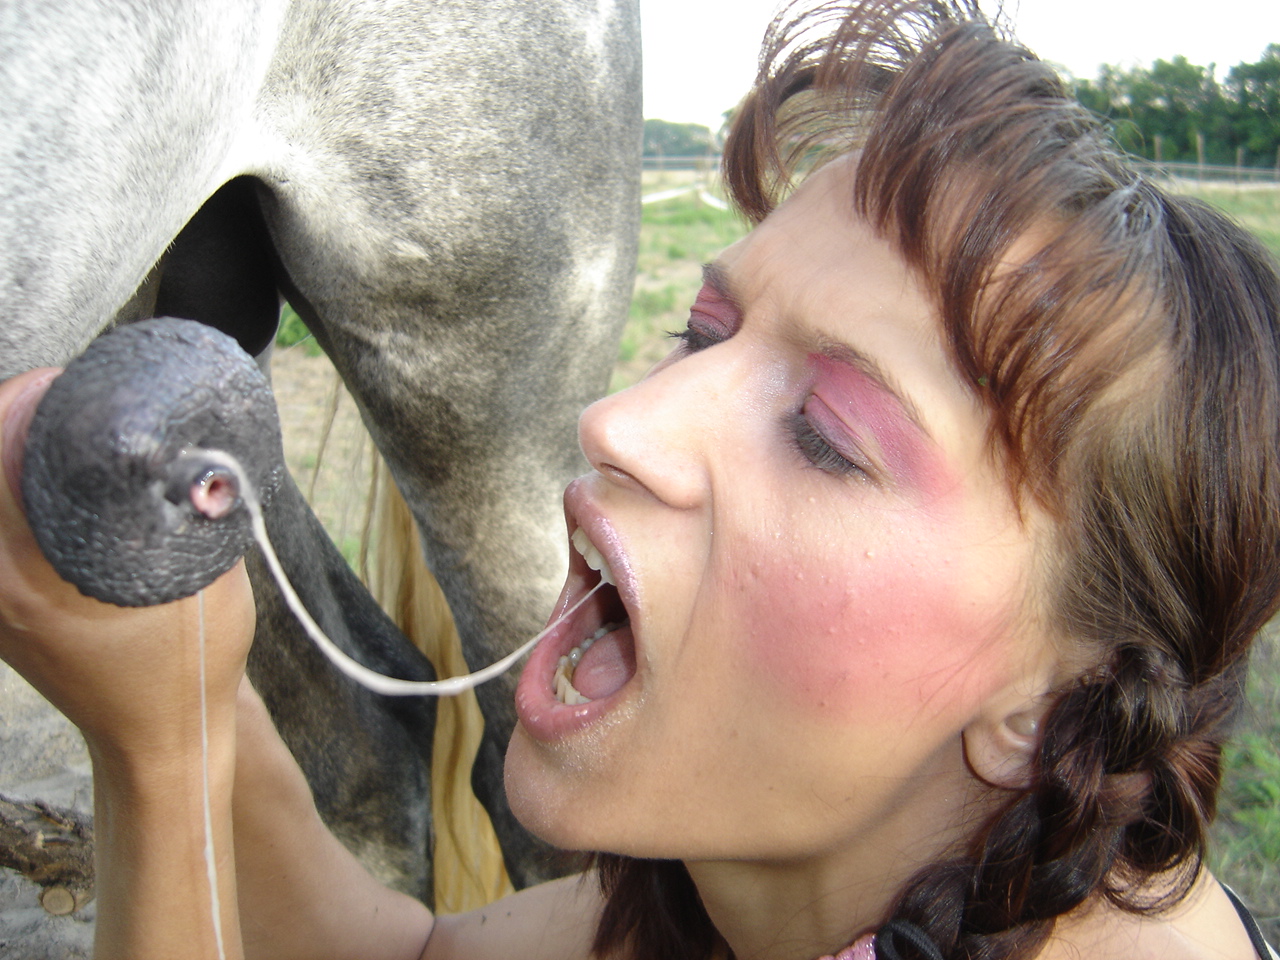 Horse cumming inside women